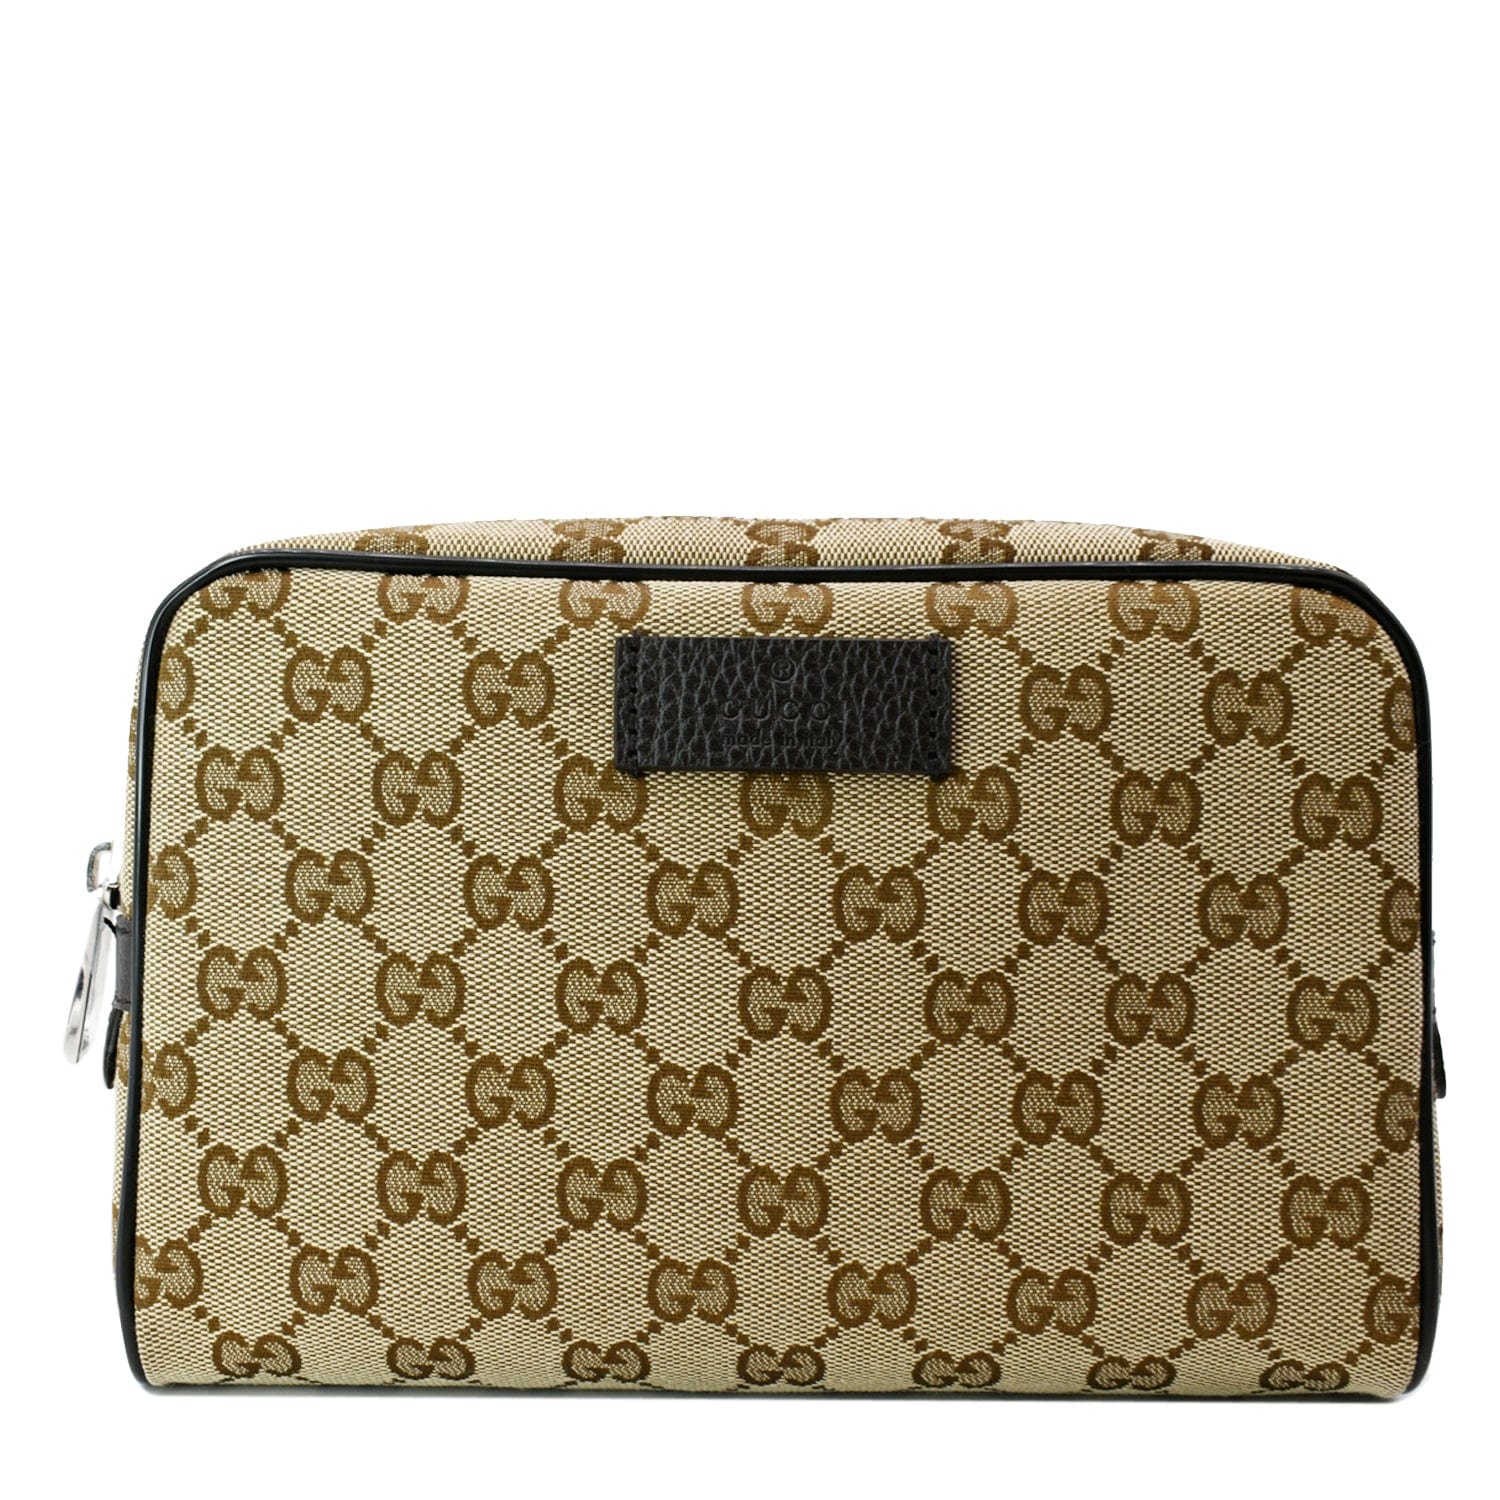 Gucci GG Black Sling Backpack. Belt Bag / Crossbody Bag | eBay